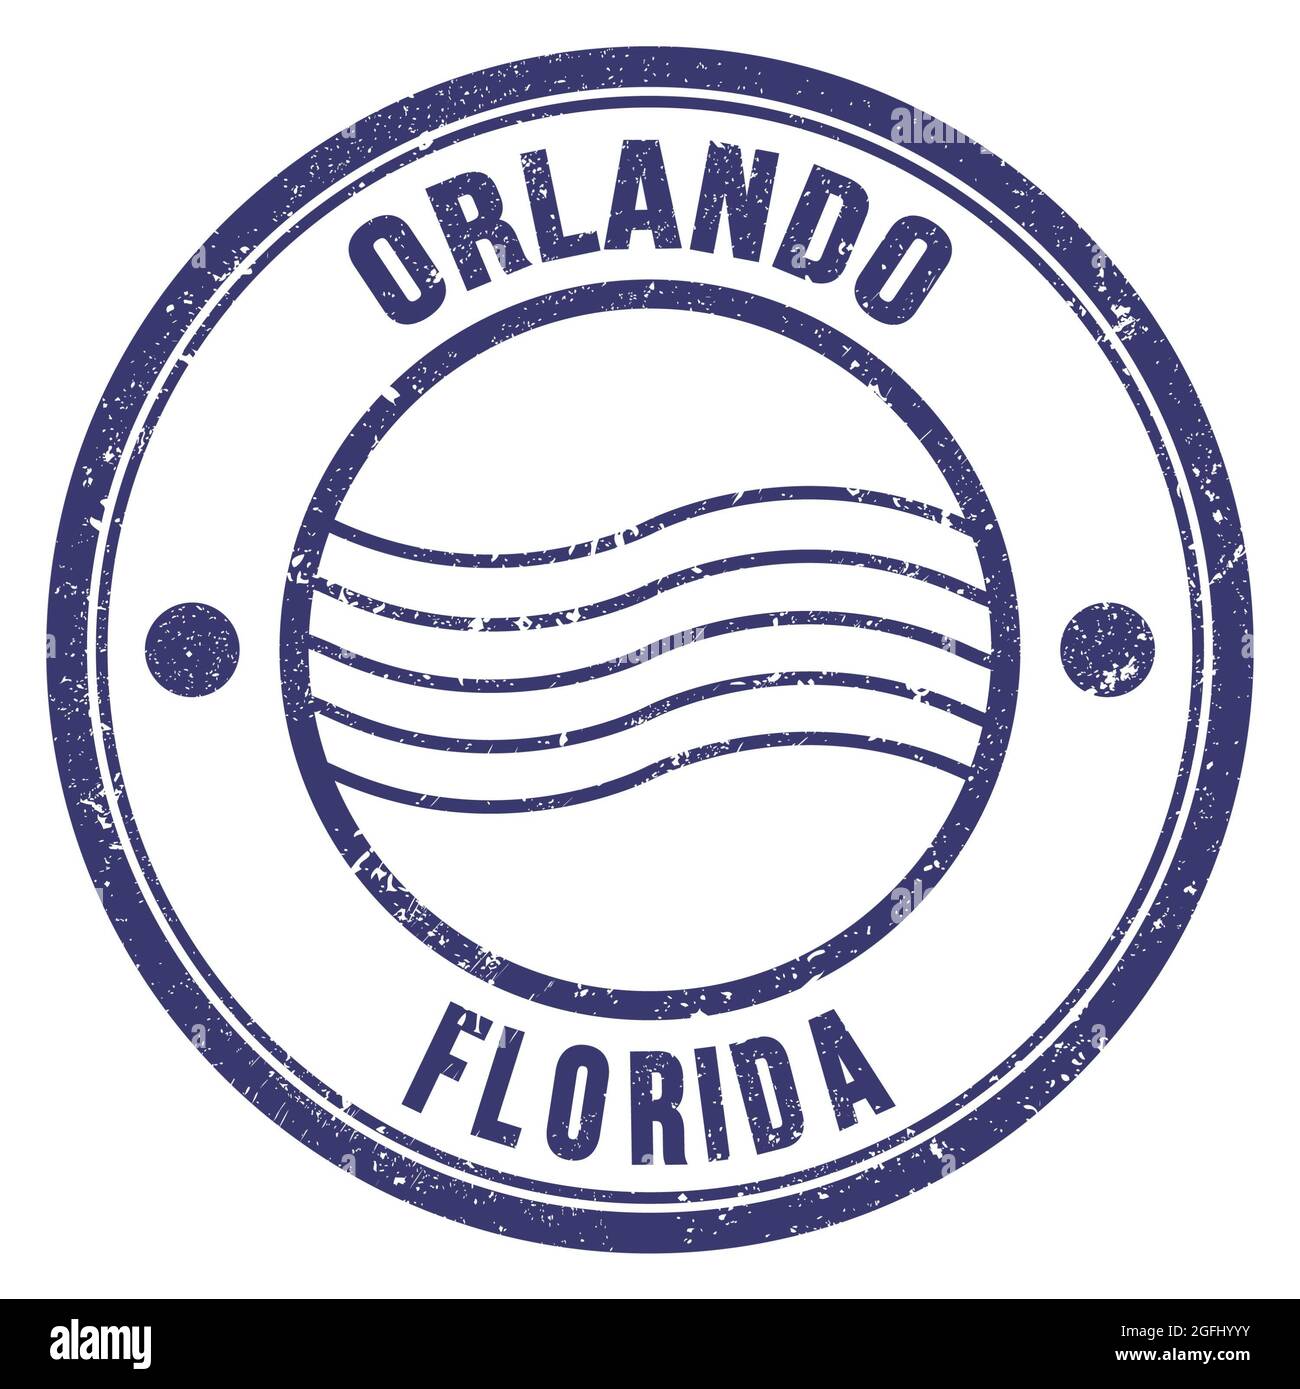 tipo El respeto perecer ORLANDO - FLORIDA, palabras escritas en sello postal redondo azul  Fotografía de stock - Alamy